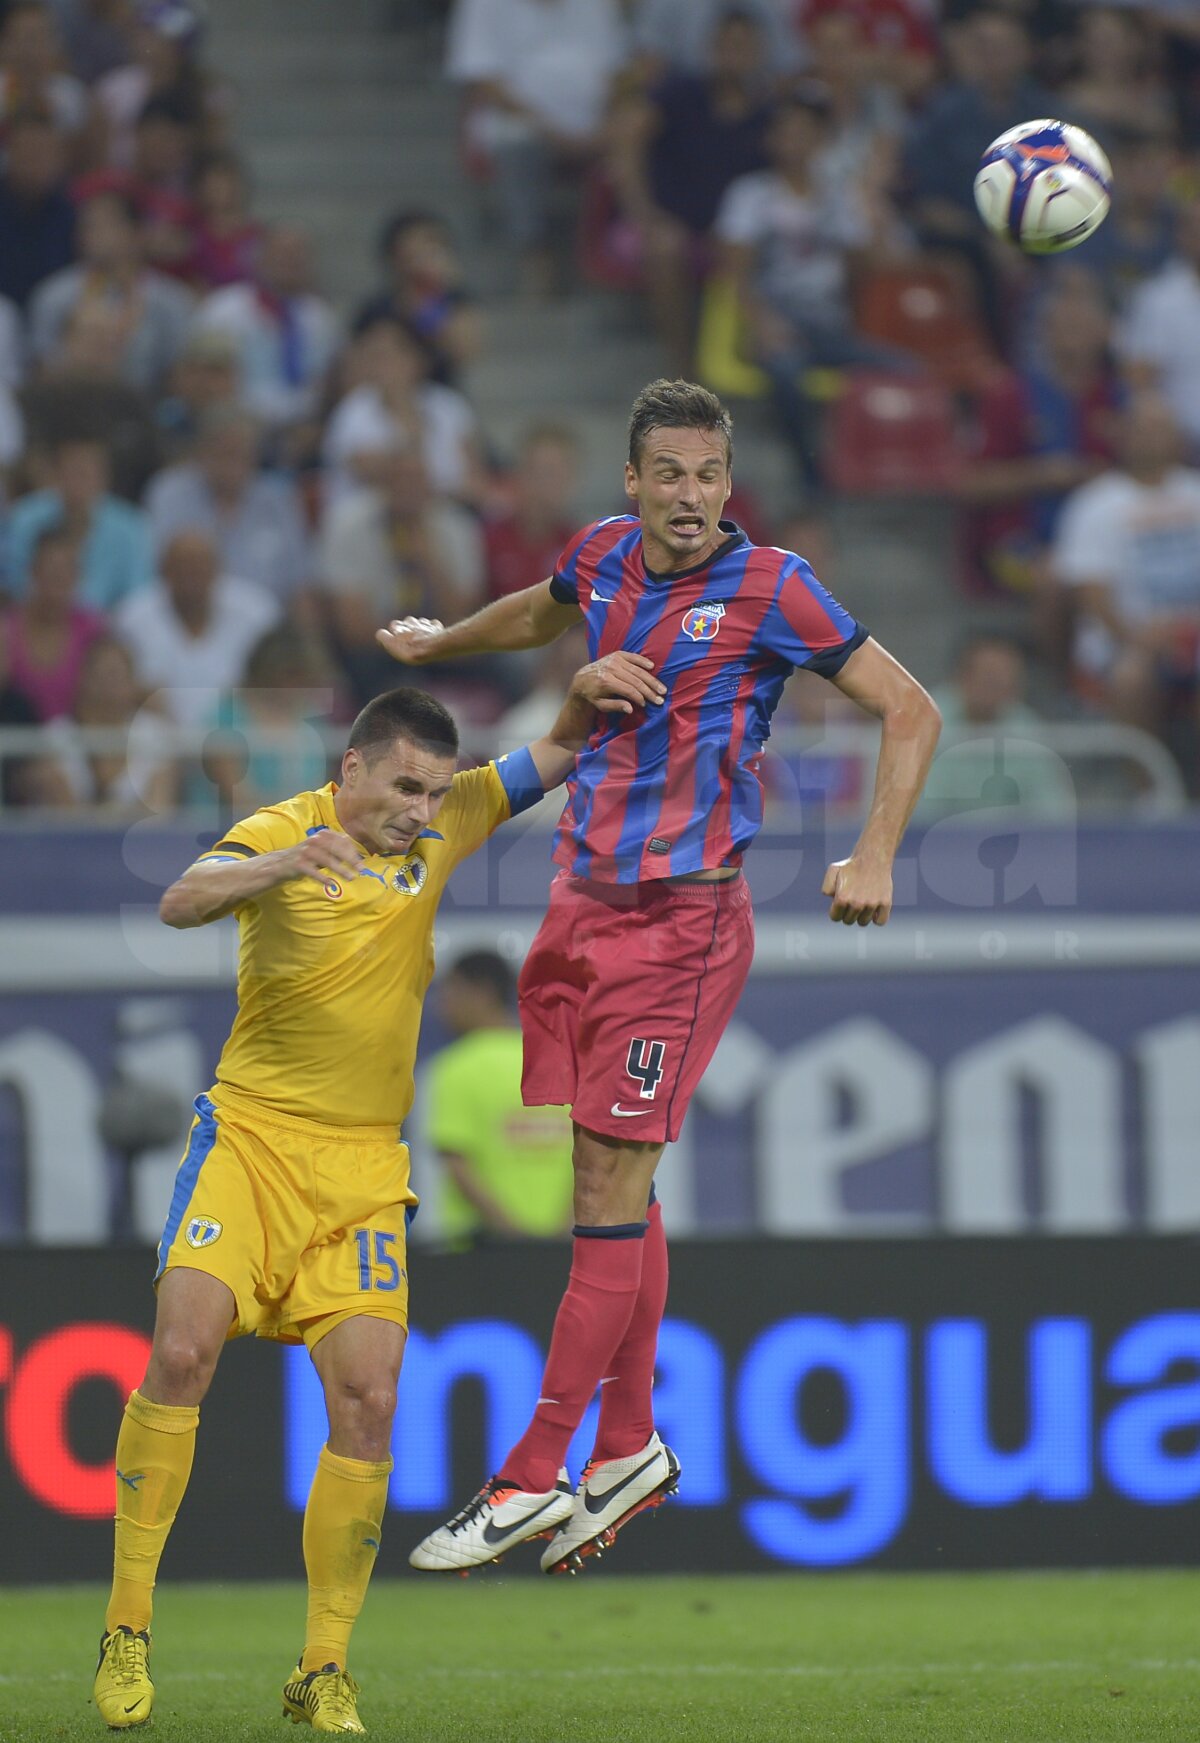 FOTO Steaua şi-a prezentat noile tricouri, în Supercupa României cu Petrolul